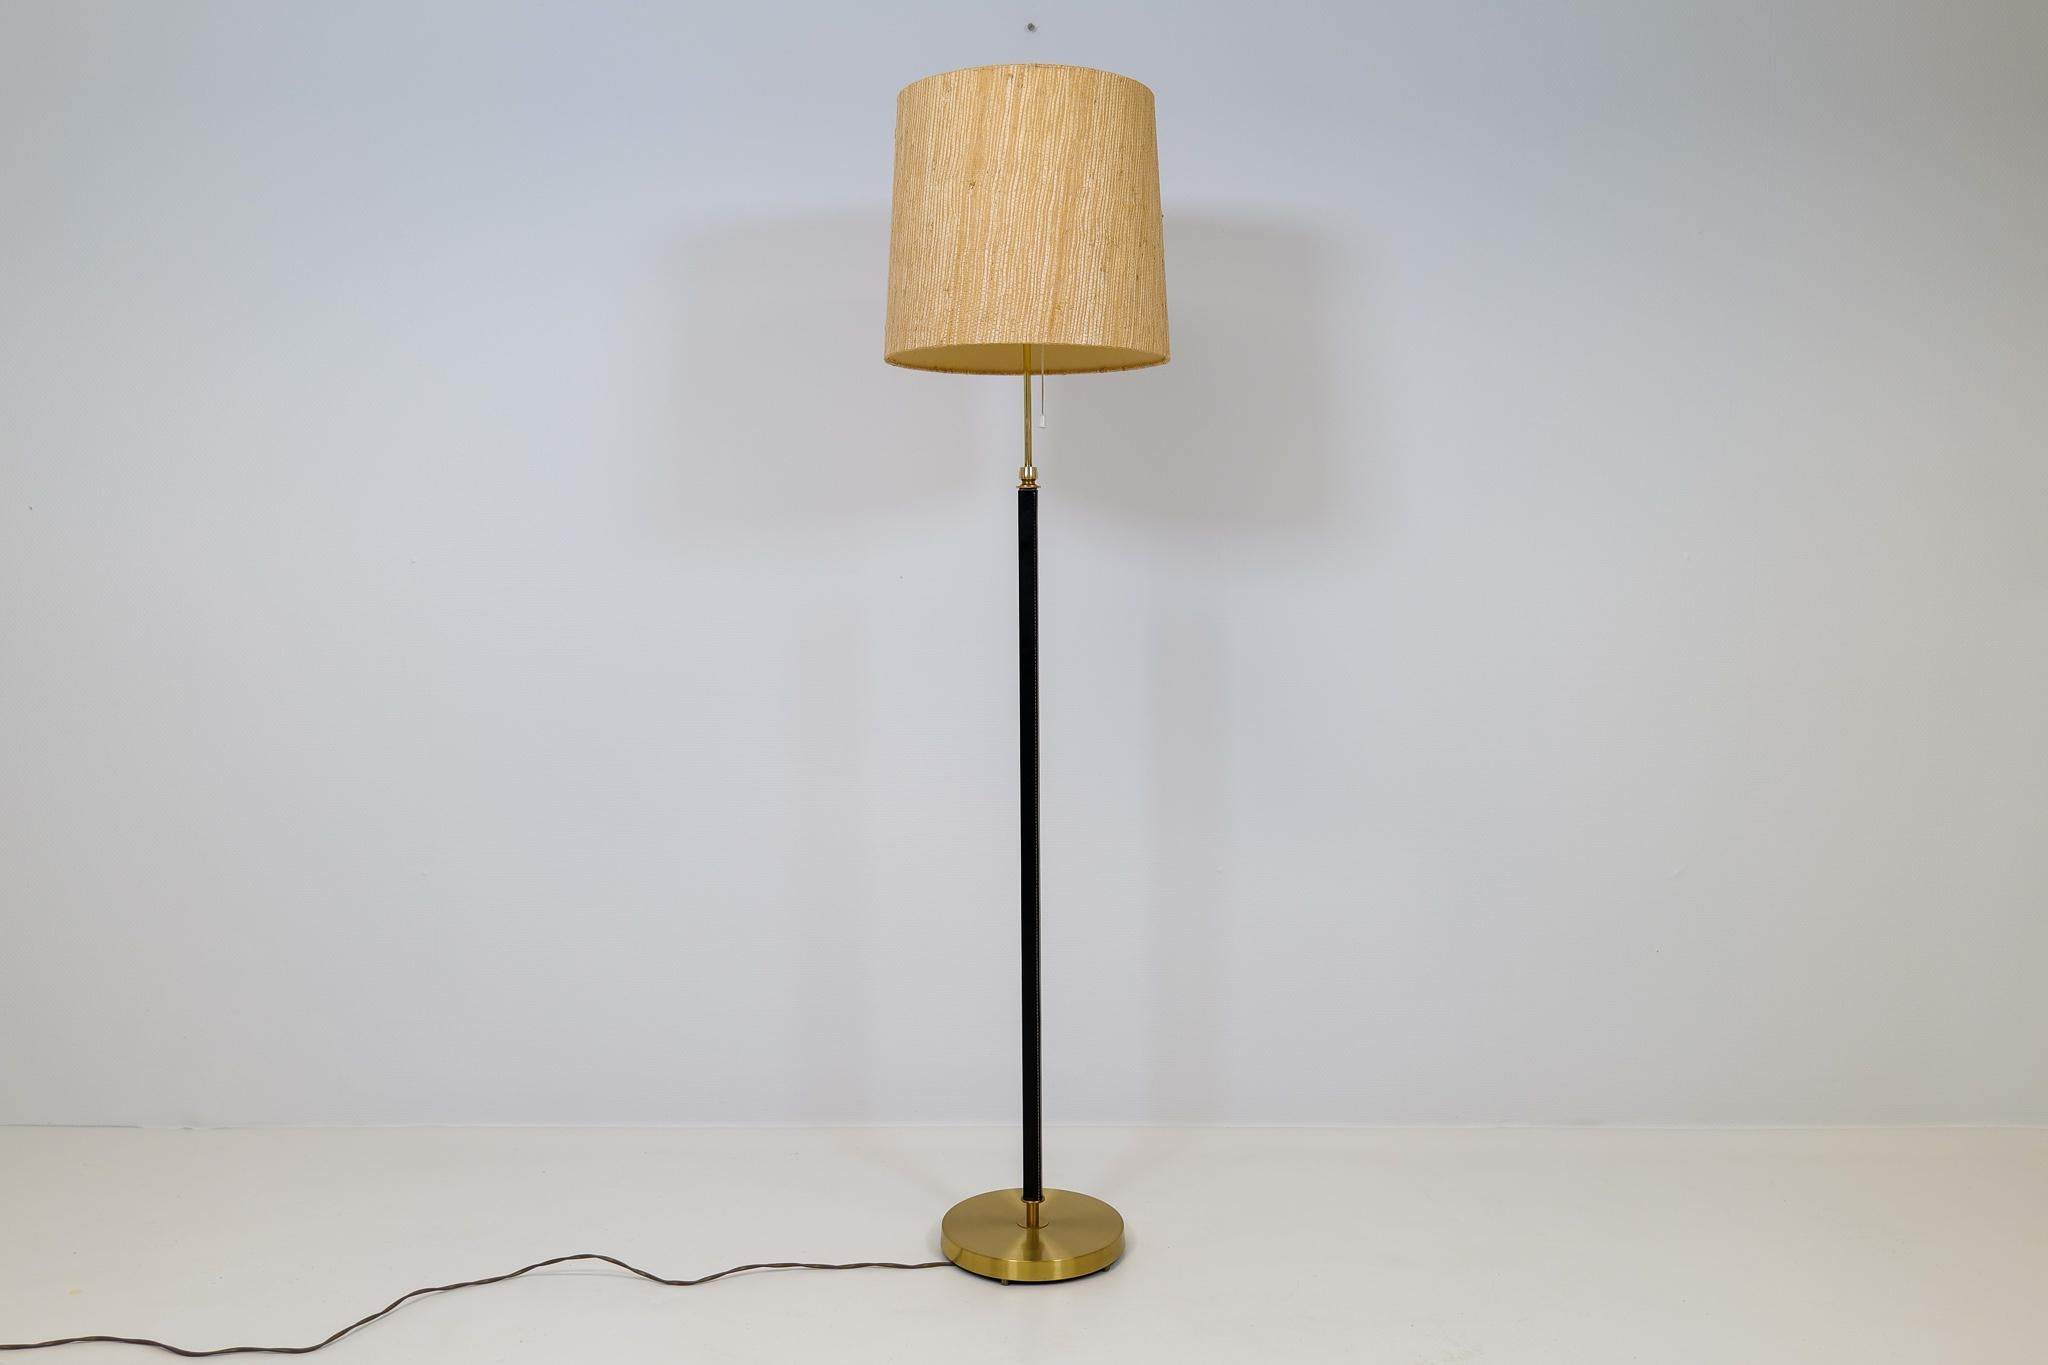 Diese Lampe wurde in Schweden bei Falkenbergs Belysning hergestellt. Die Kombination aus Messing und schwarz gebeiztem Leder macht diese Lampe zu einer Ikone. Der originelle Schirm passt gut zur Struktur der Lampe.

Guter Betriebszustand mit